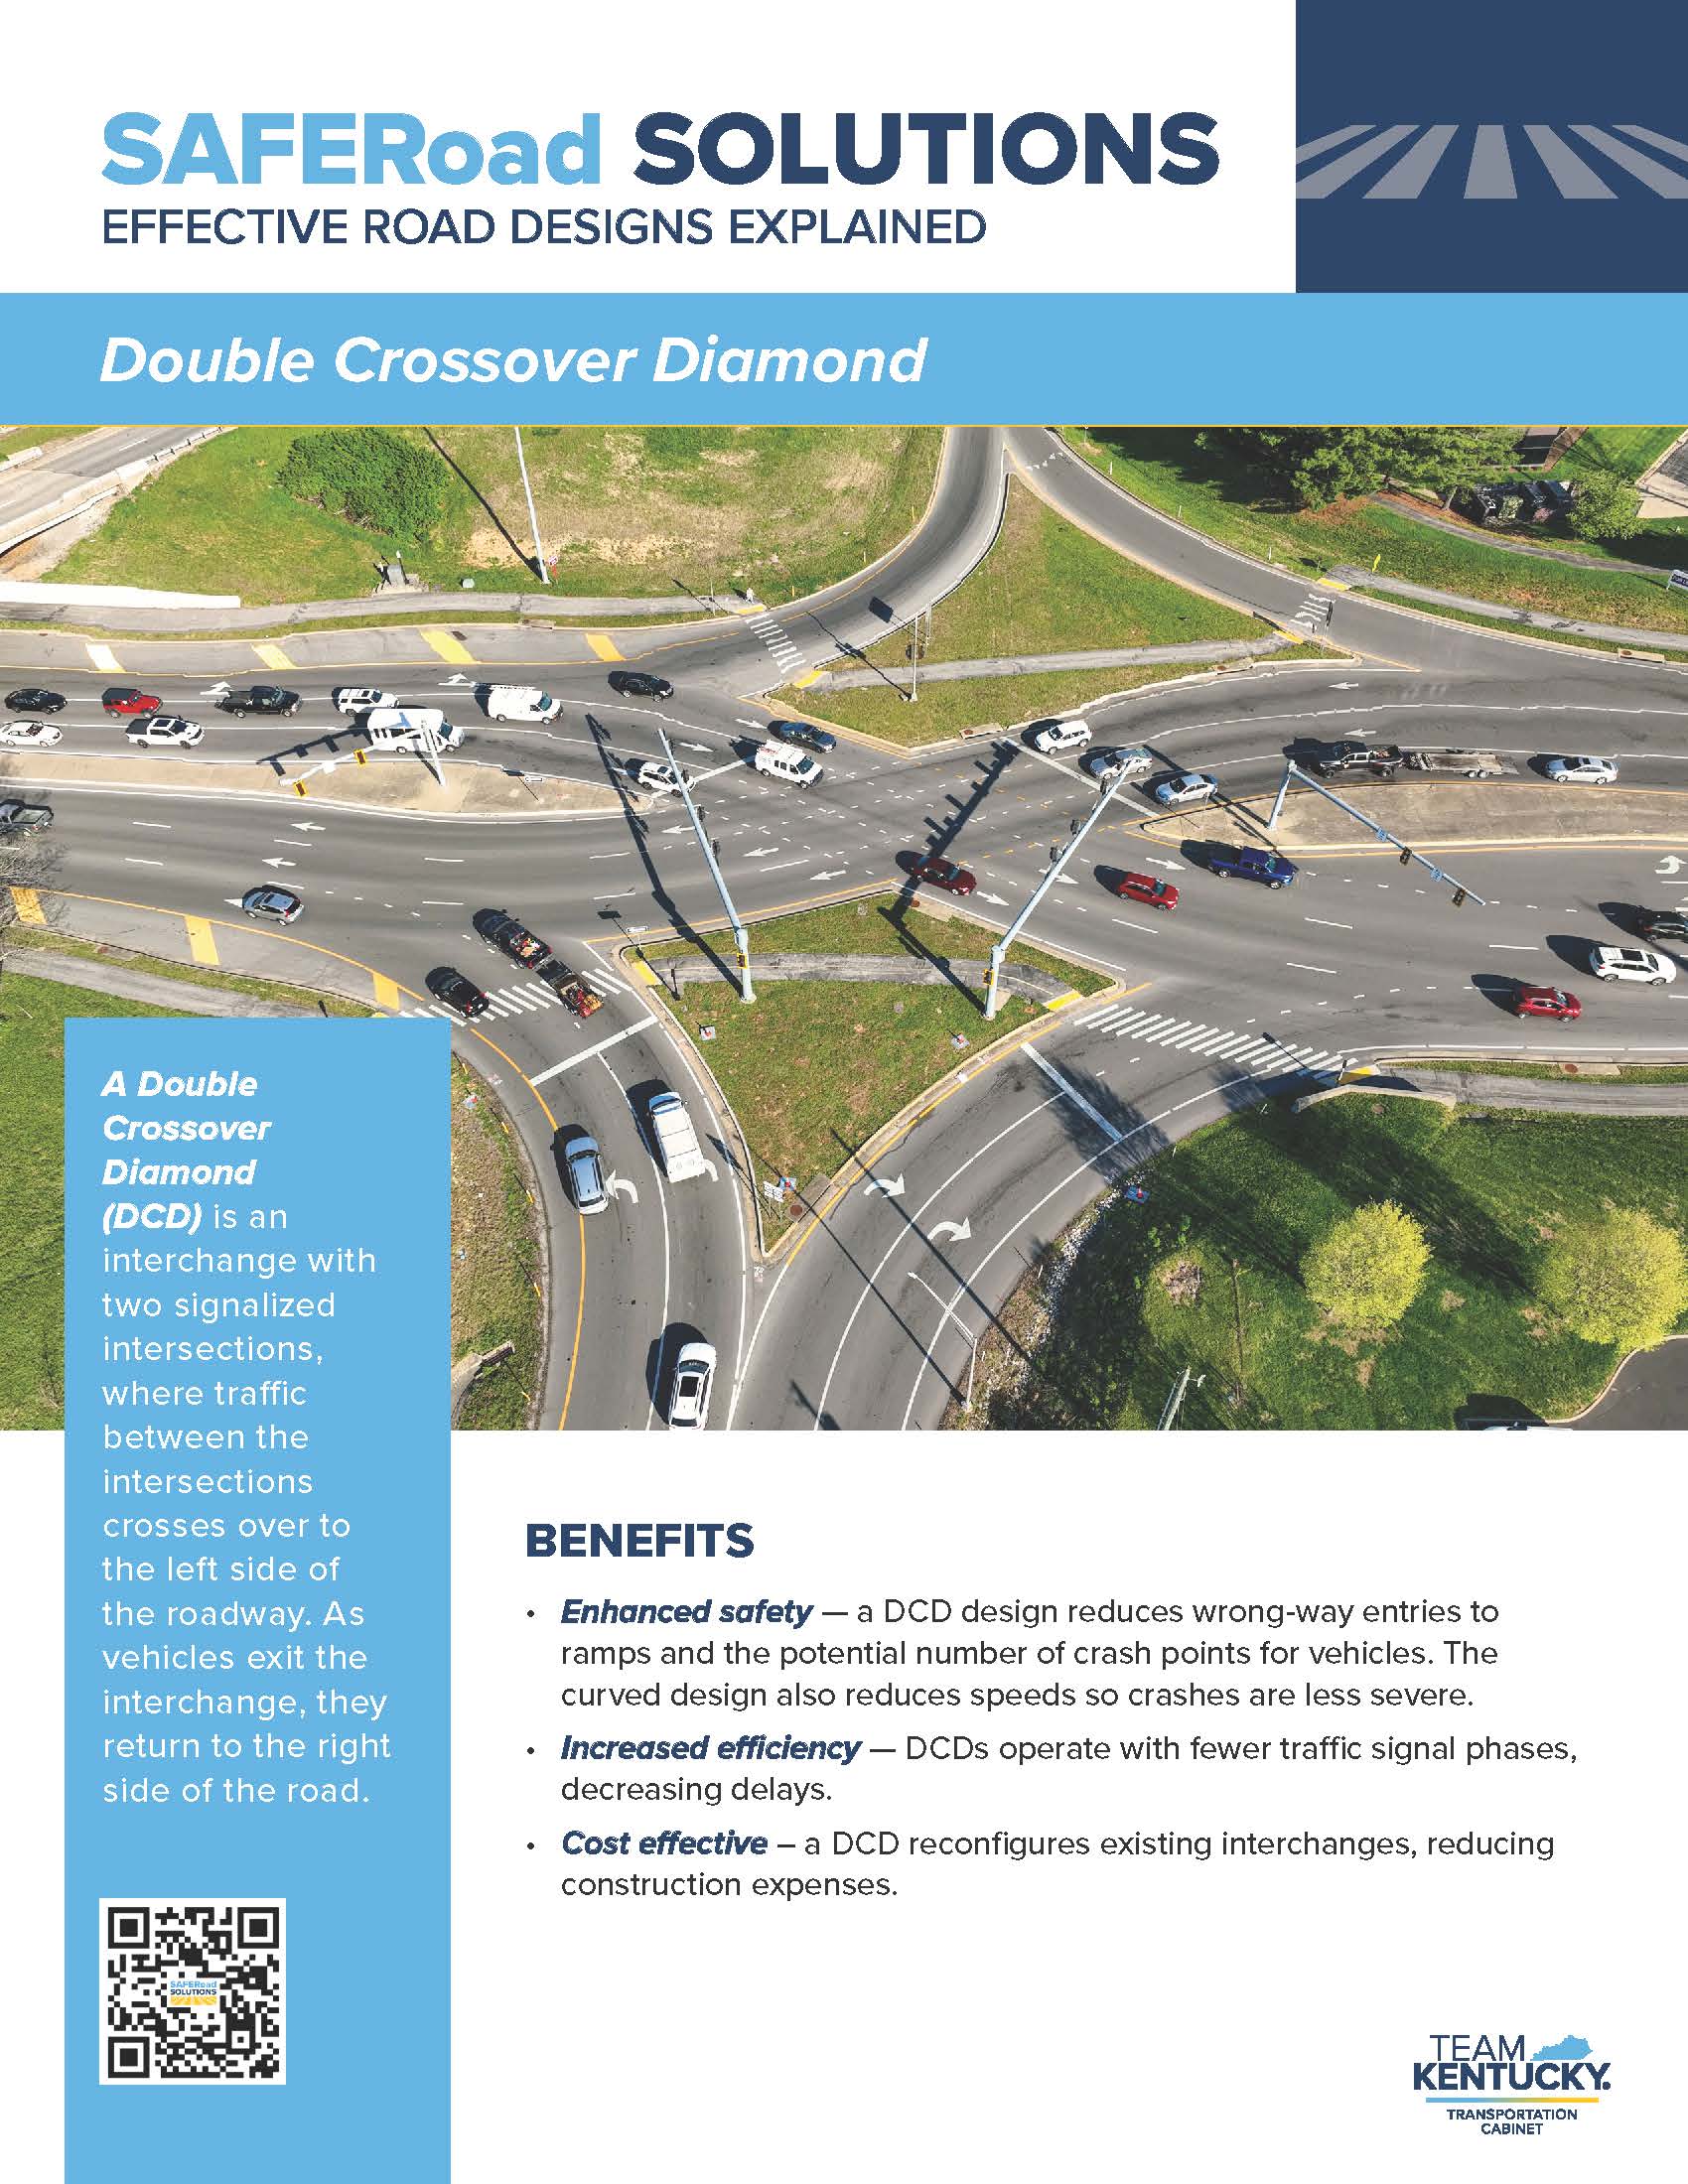 Double Crossover Diamond Interchange